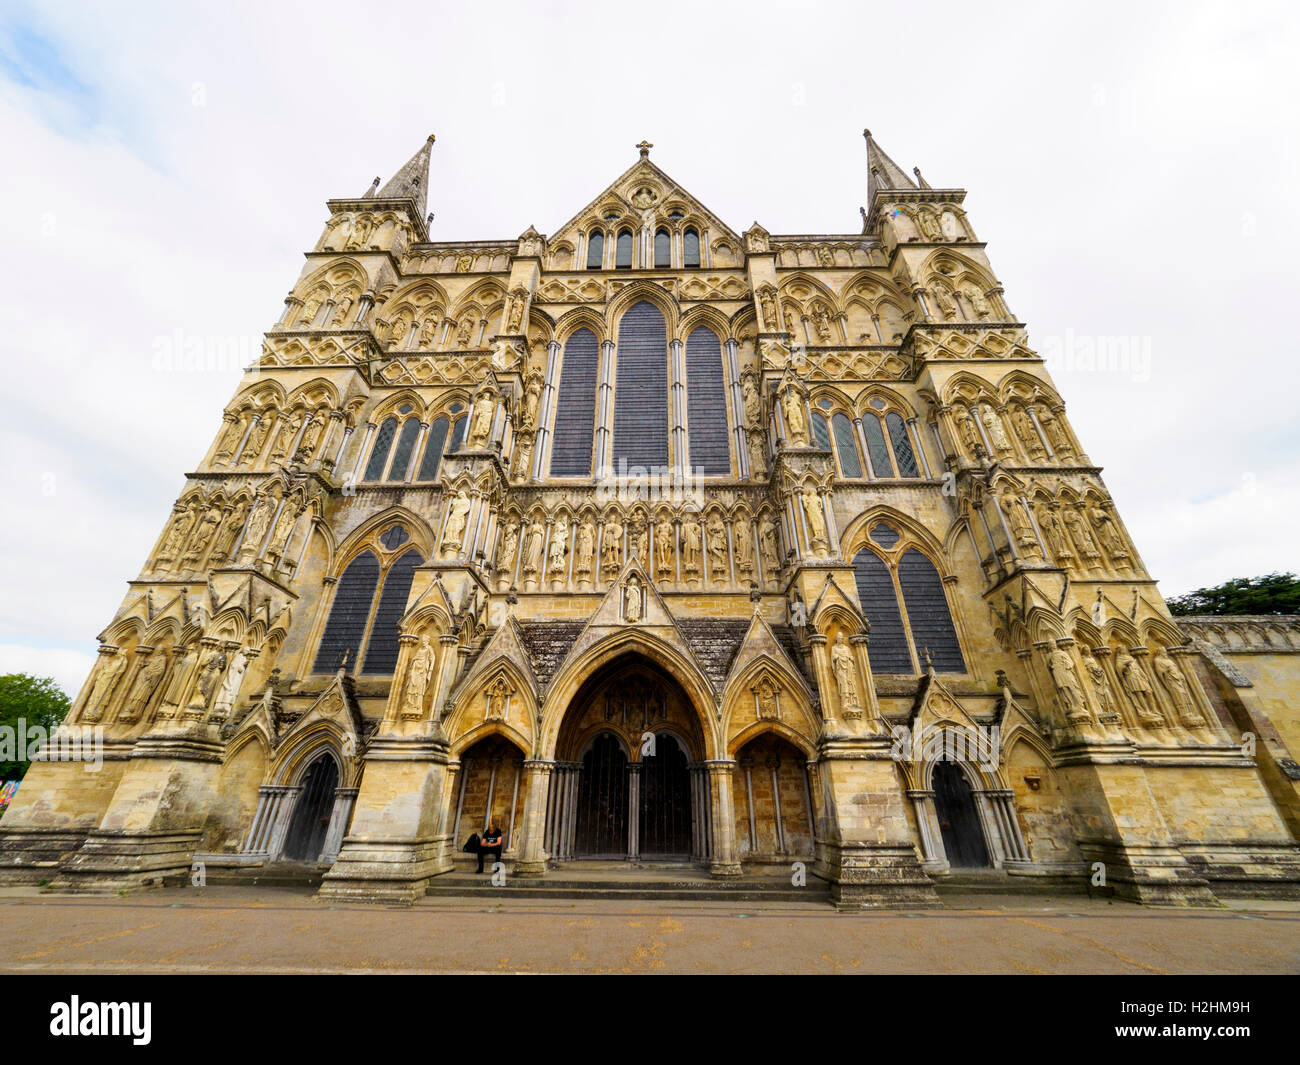 La cathédrale de Salisbury ou Cathédrale de l'église de la Bienheureuse Vierge Marie - Wiltshire, Angleterre Banque D'Images